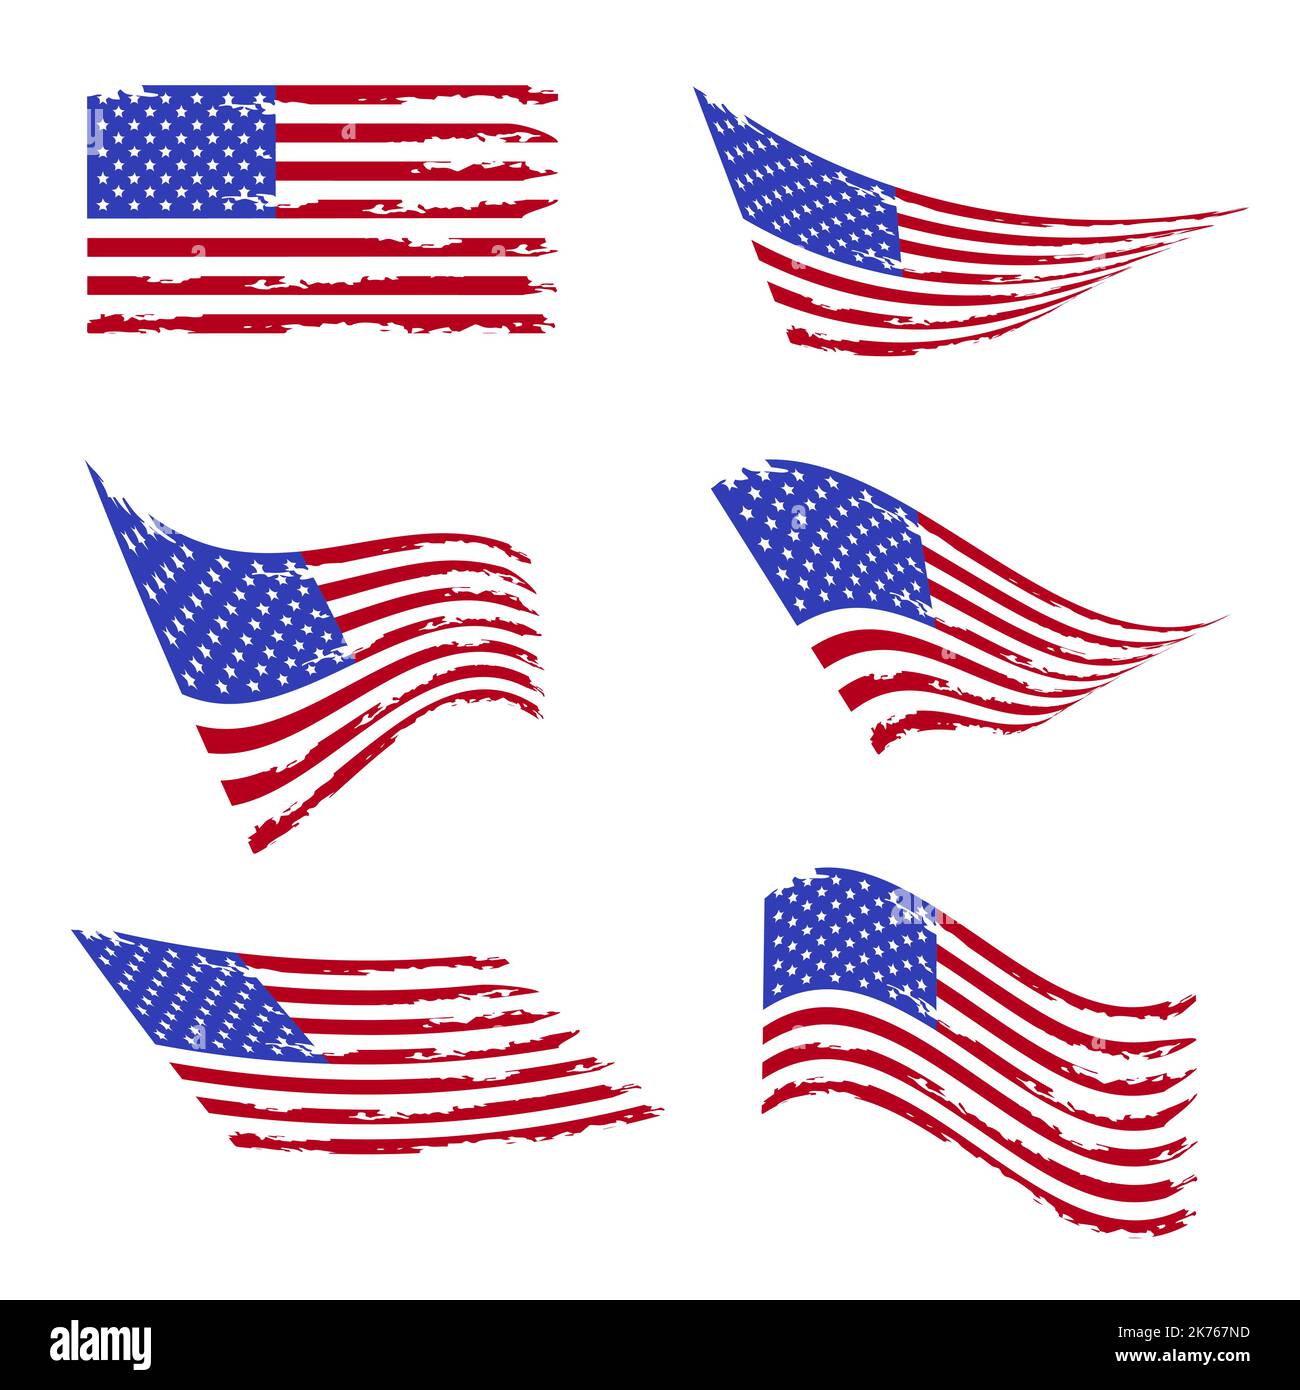 Gewellte amerikanische Flagge gesetzt. Alte Vintage Flagge der Vereinigten Staaten. Grunge USA Flagge. Isoliert auf weißem Hintergrund. Vektorgrafik. Stock Vektor